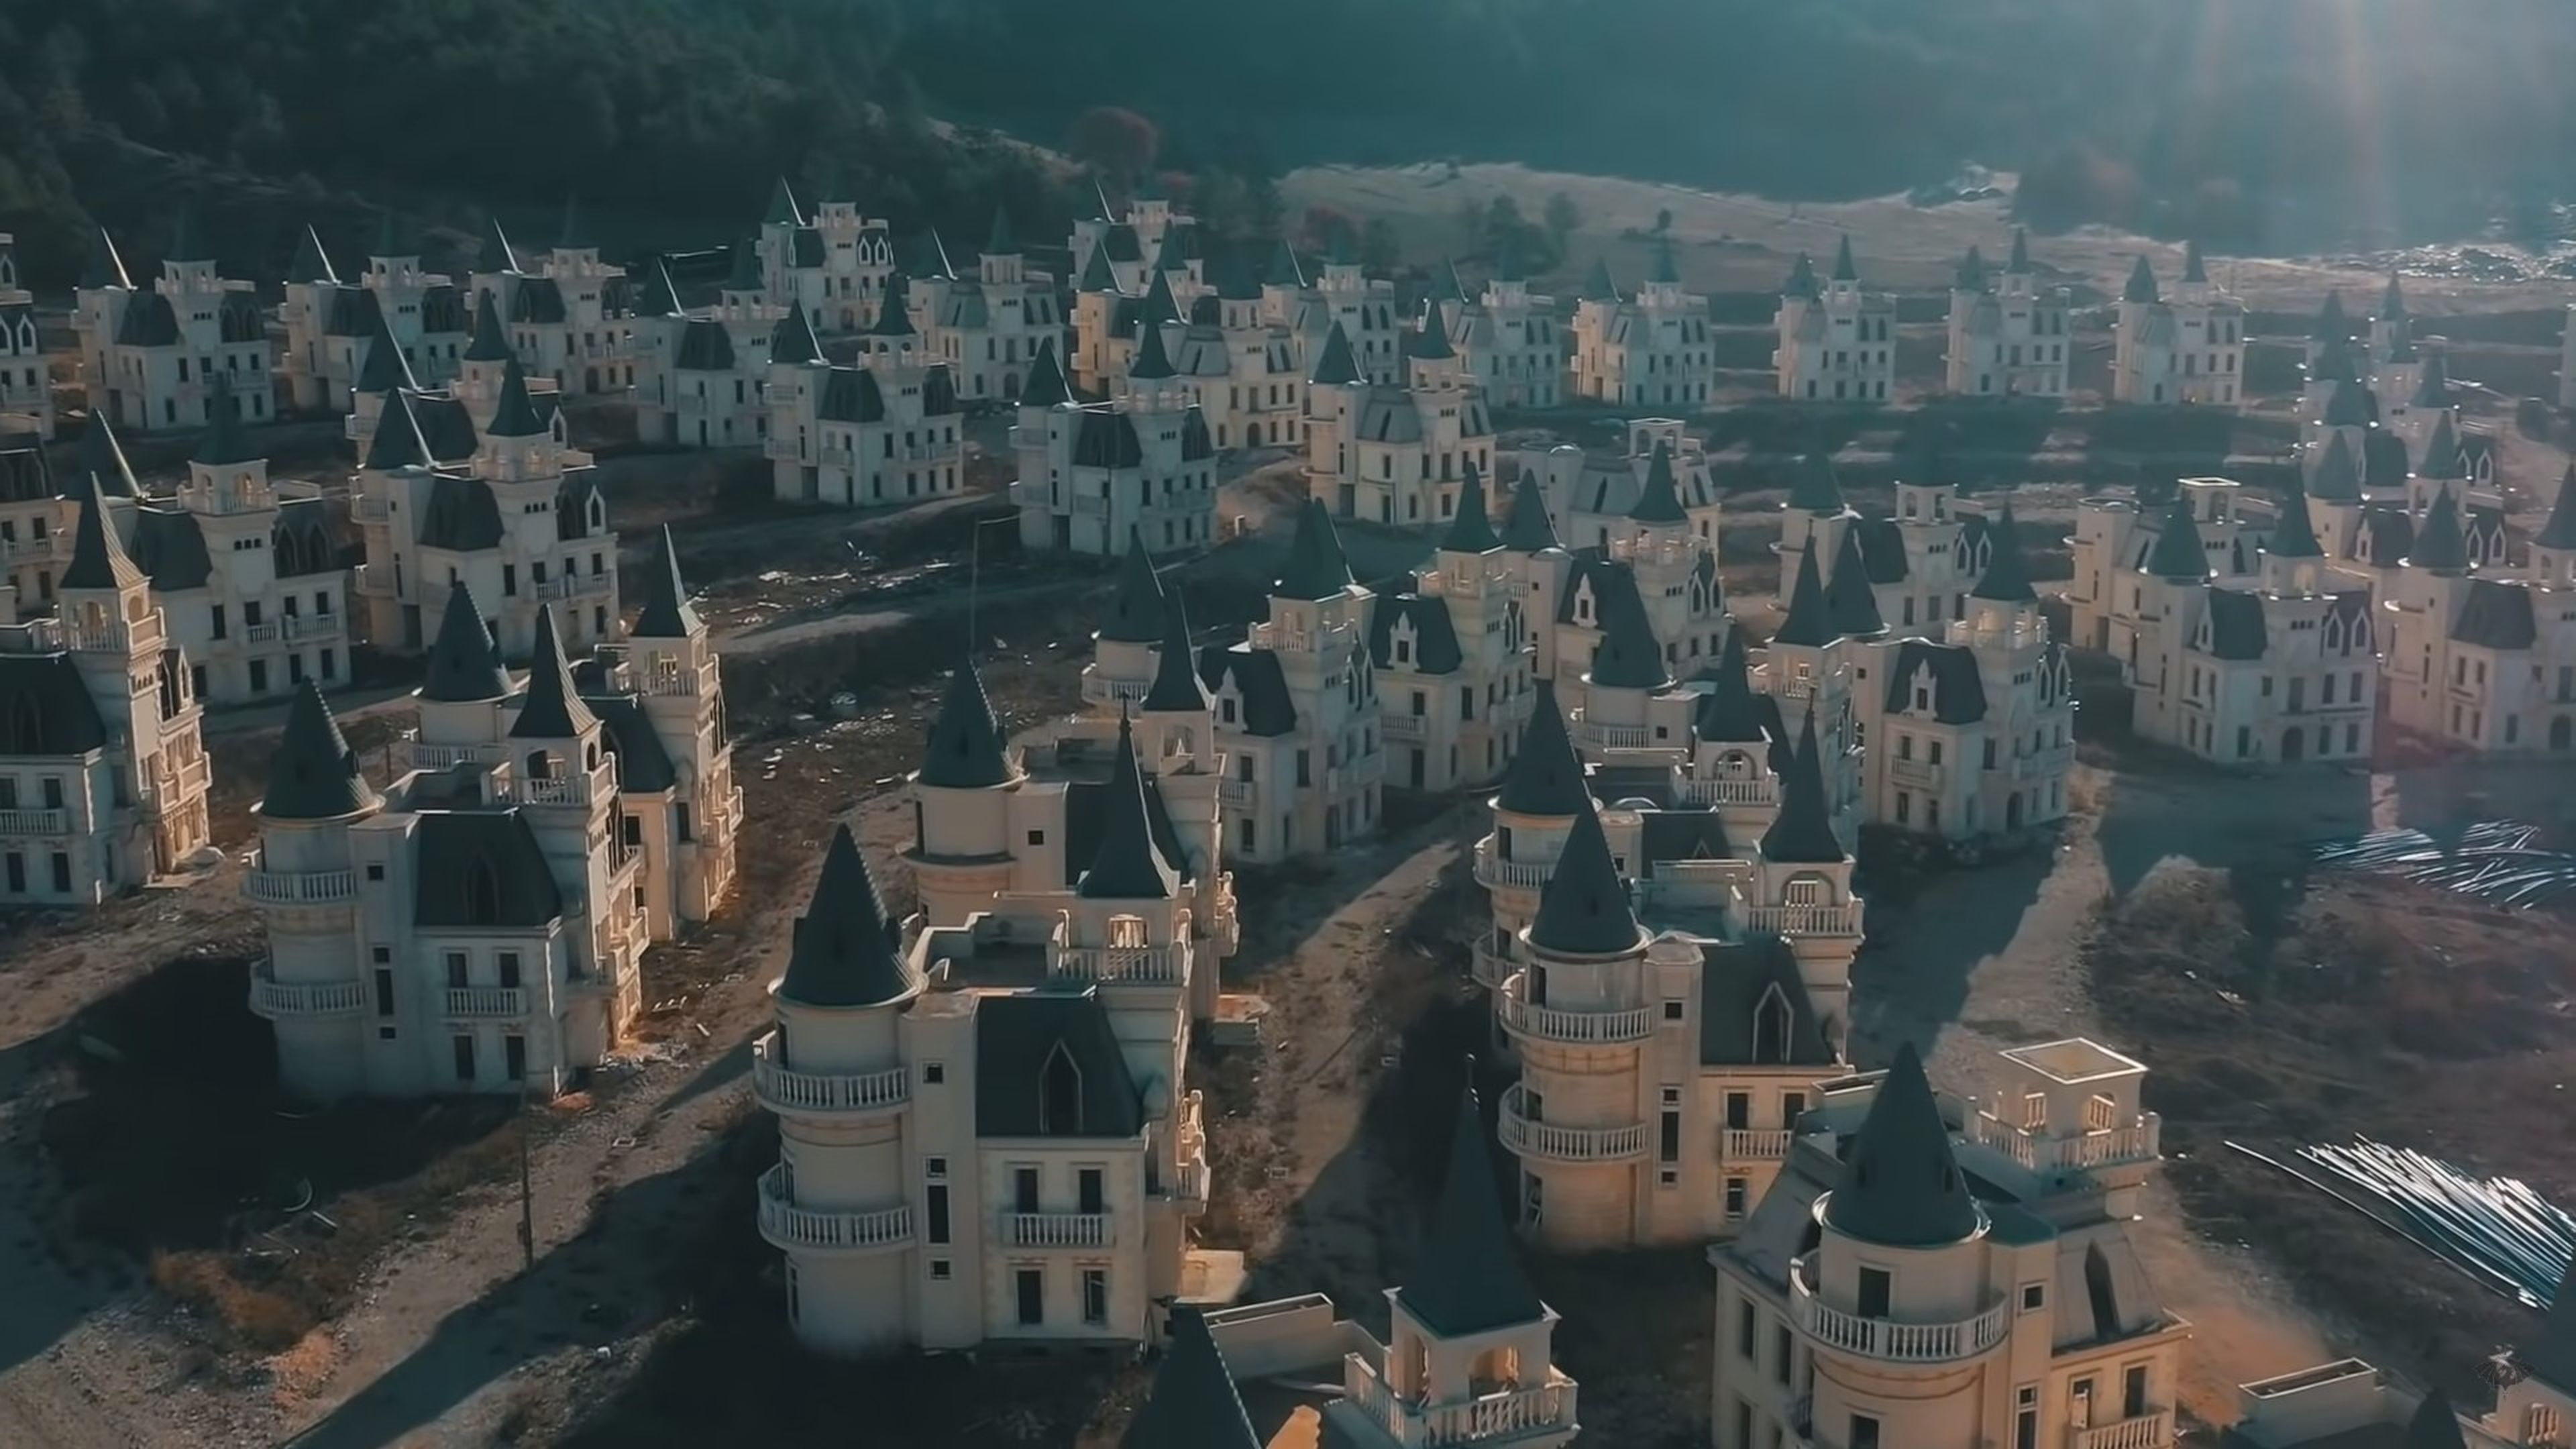 La ciudad fantasma con cientos de castillos estilo Disney abandonados